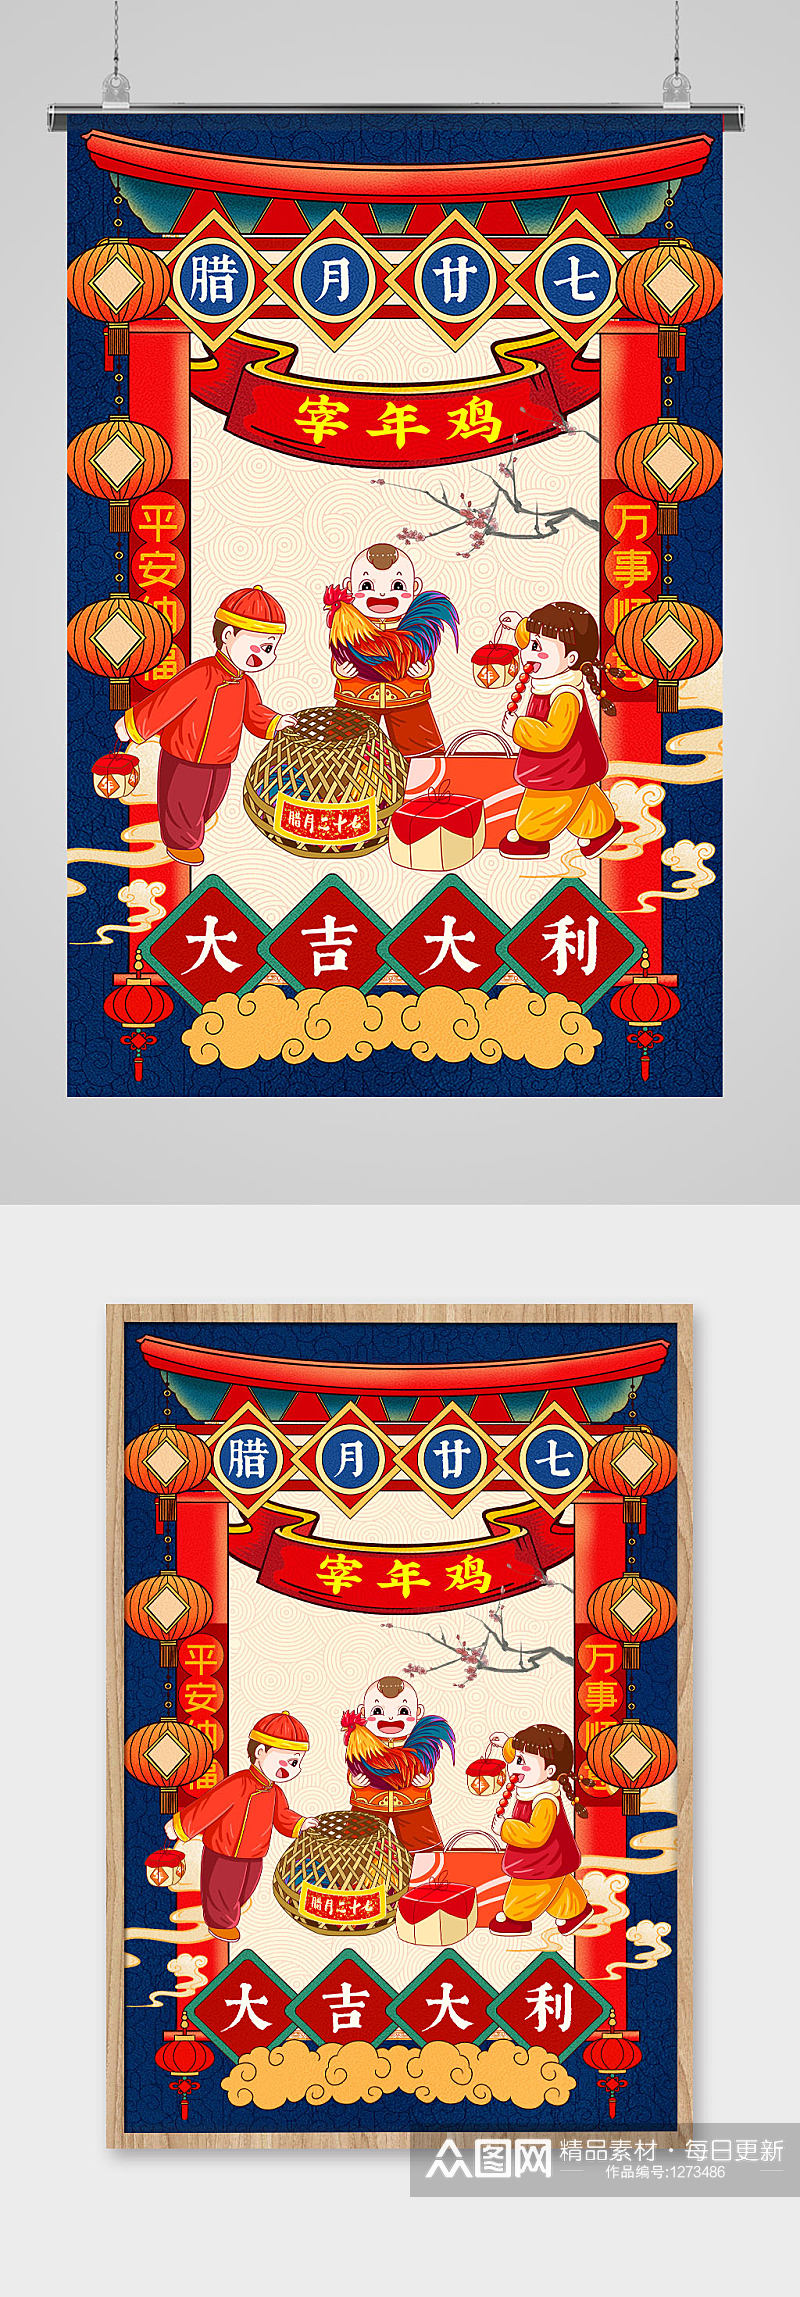 中国传统民俗插画风之宰年鸡海报素材